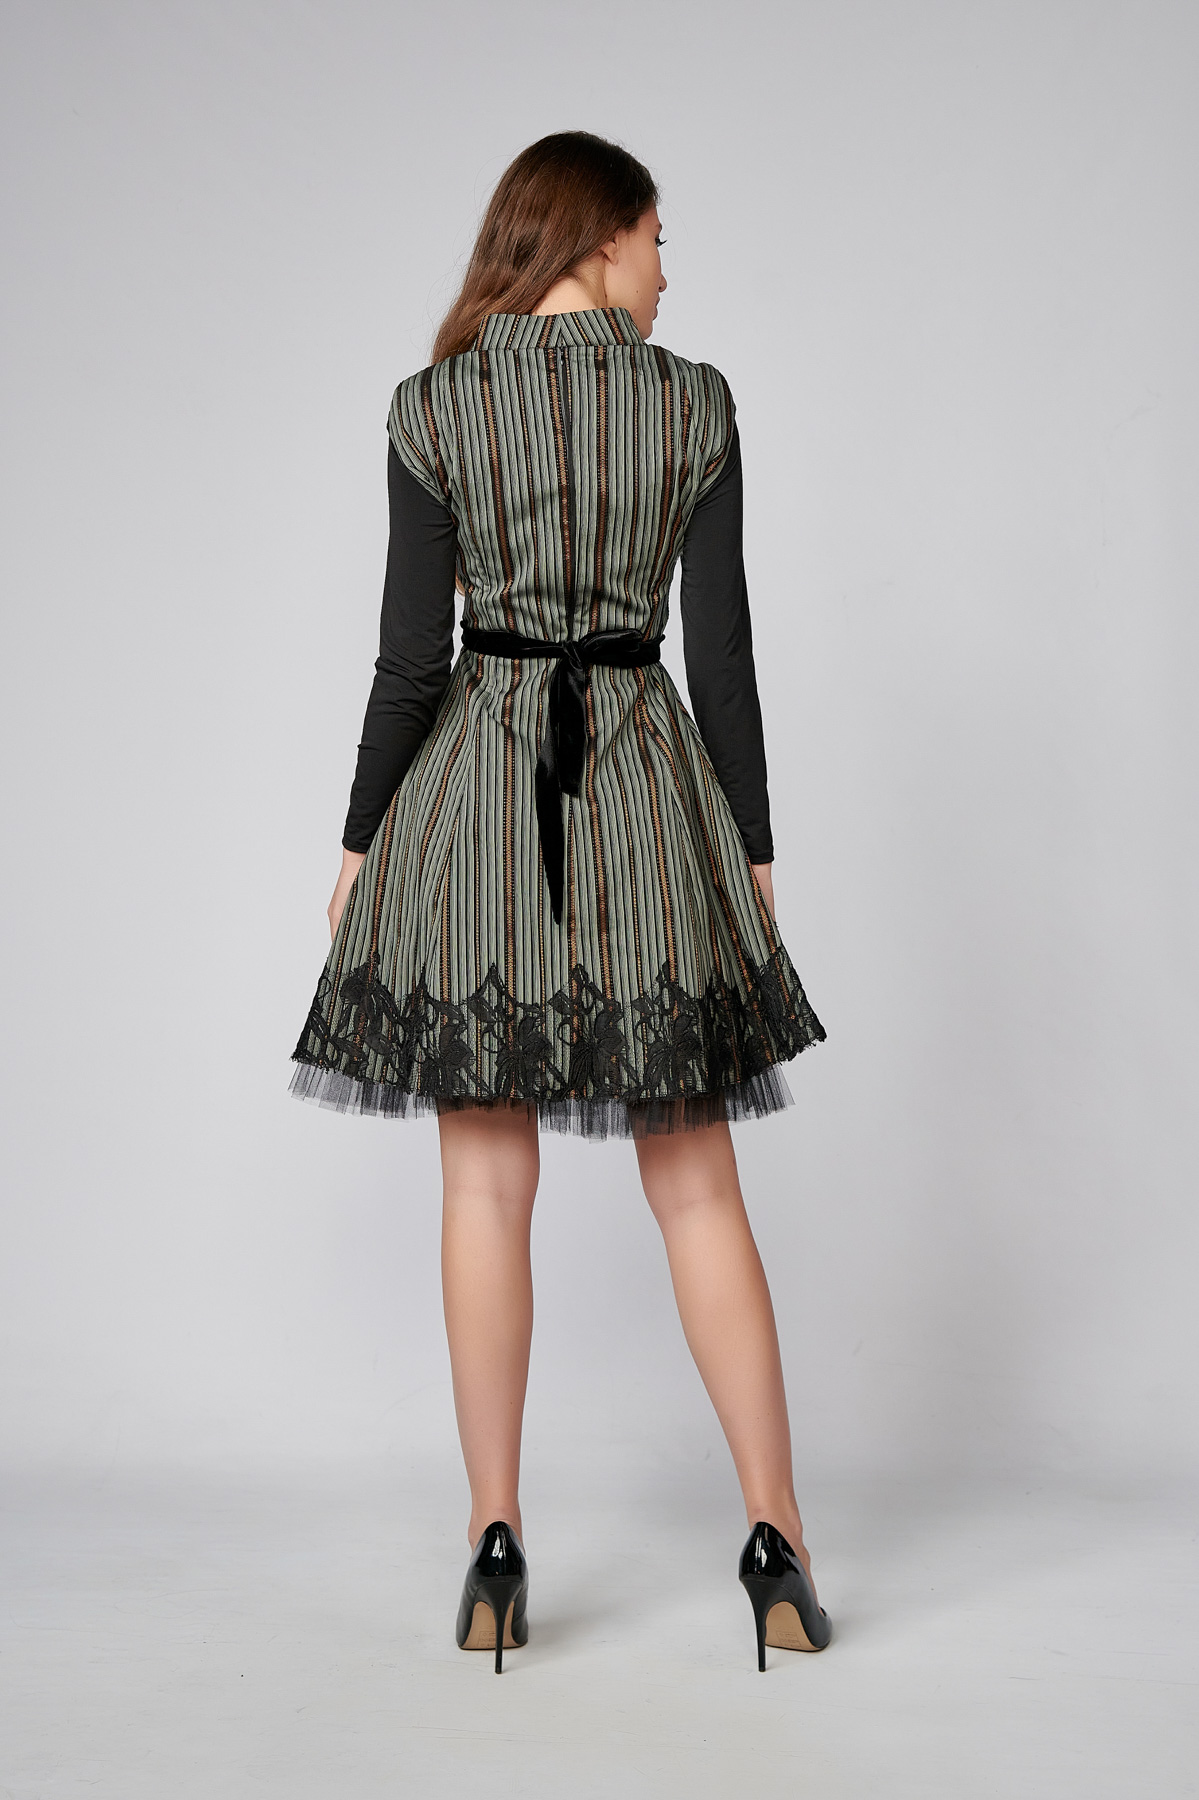 EMILY Dress. Natural fabrics, original design, handmade embroidery